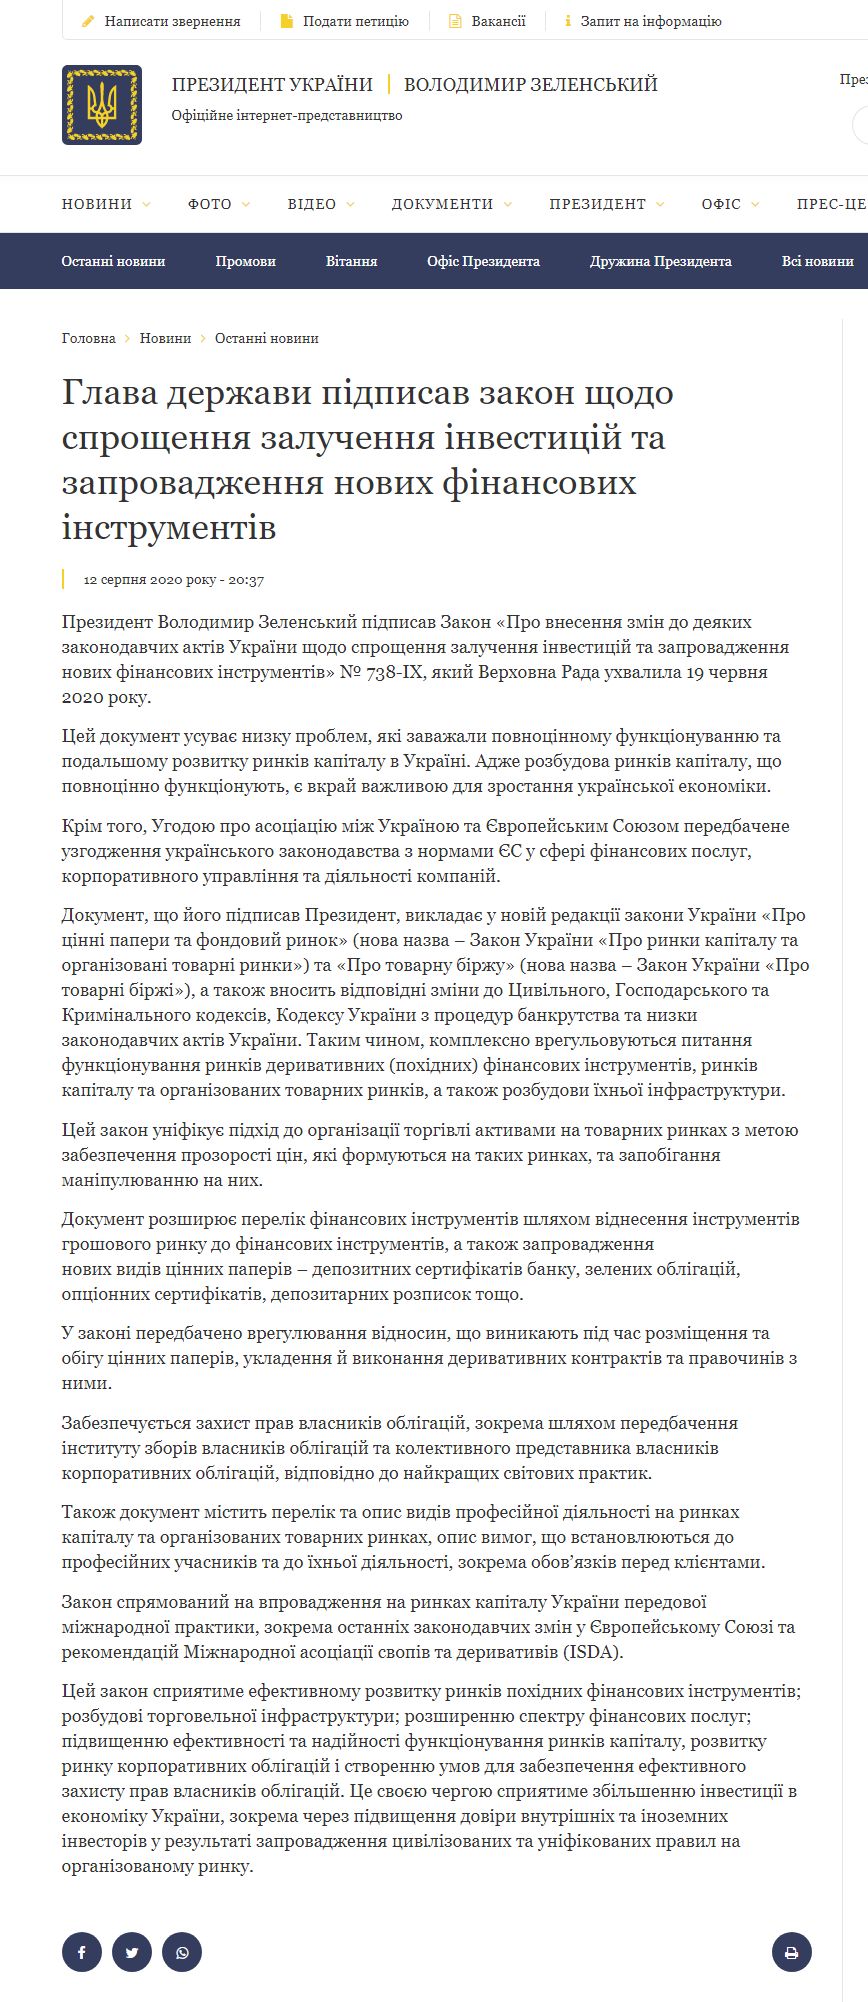 https://www.president.gov.ua/news/glava-derzhavi-pidpisav-zakon-shodo-sproshennya-zaluchennya-62697